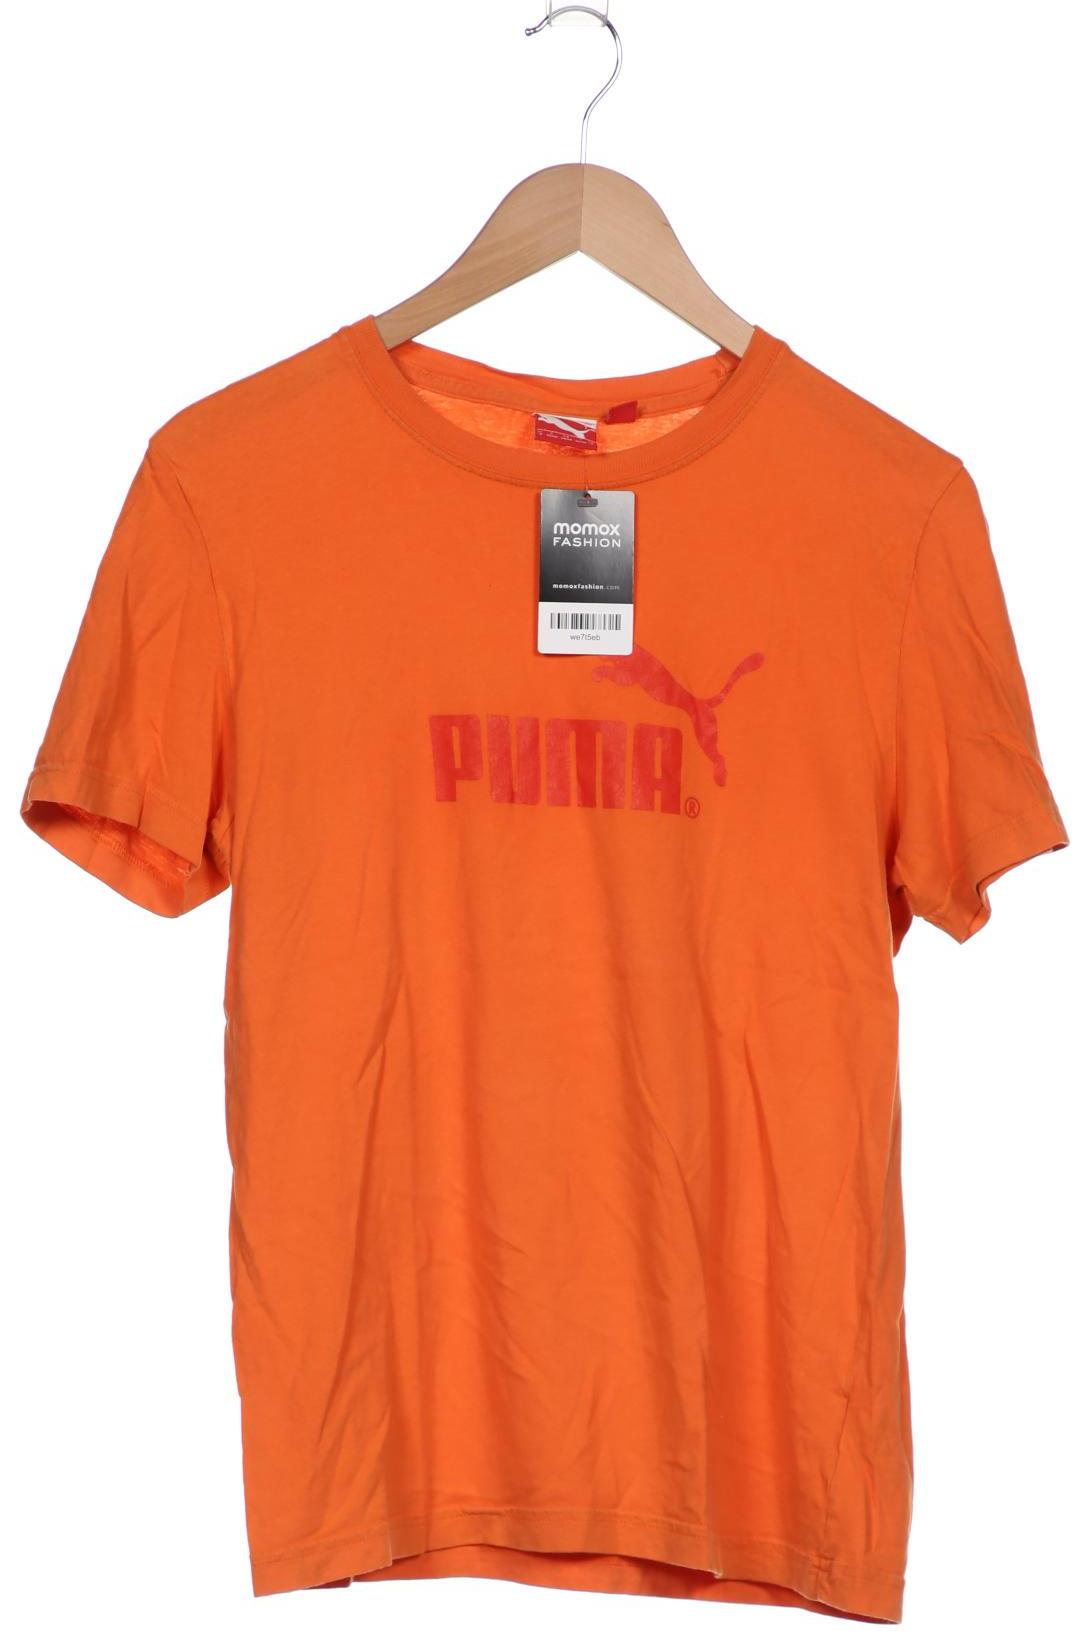 Puma Herren T-Shirt, orange, Gr. 46 von Puma